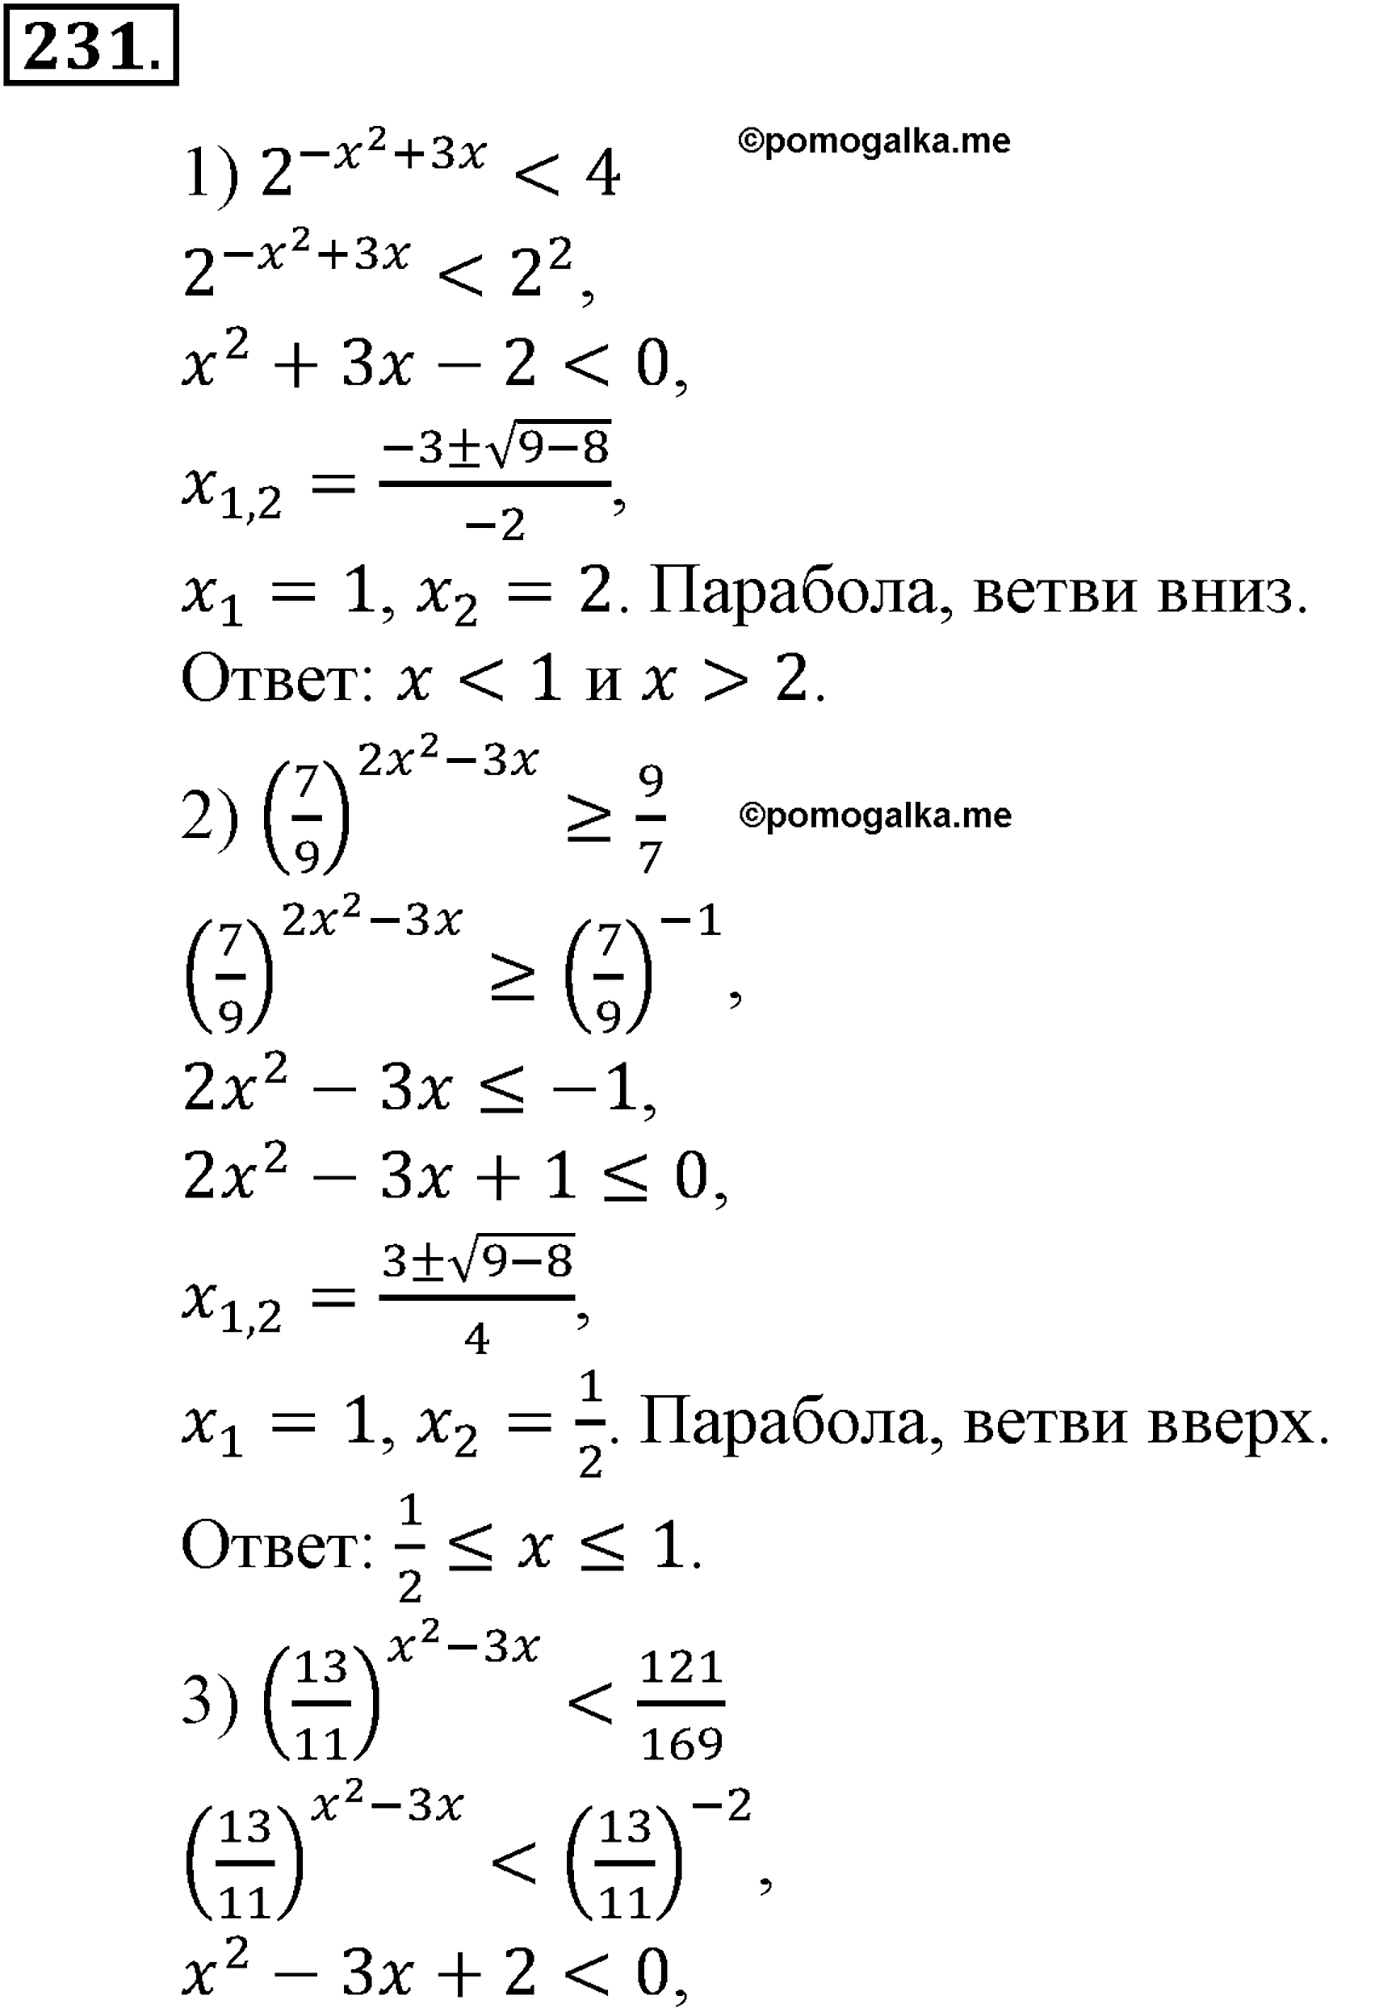 разбор задачи №231 по алгебре за 10-11 класс из учебника Алимова, Колягина